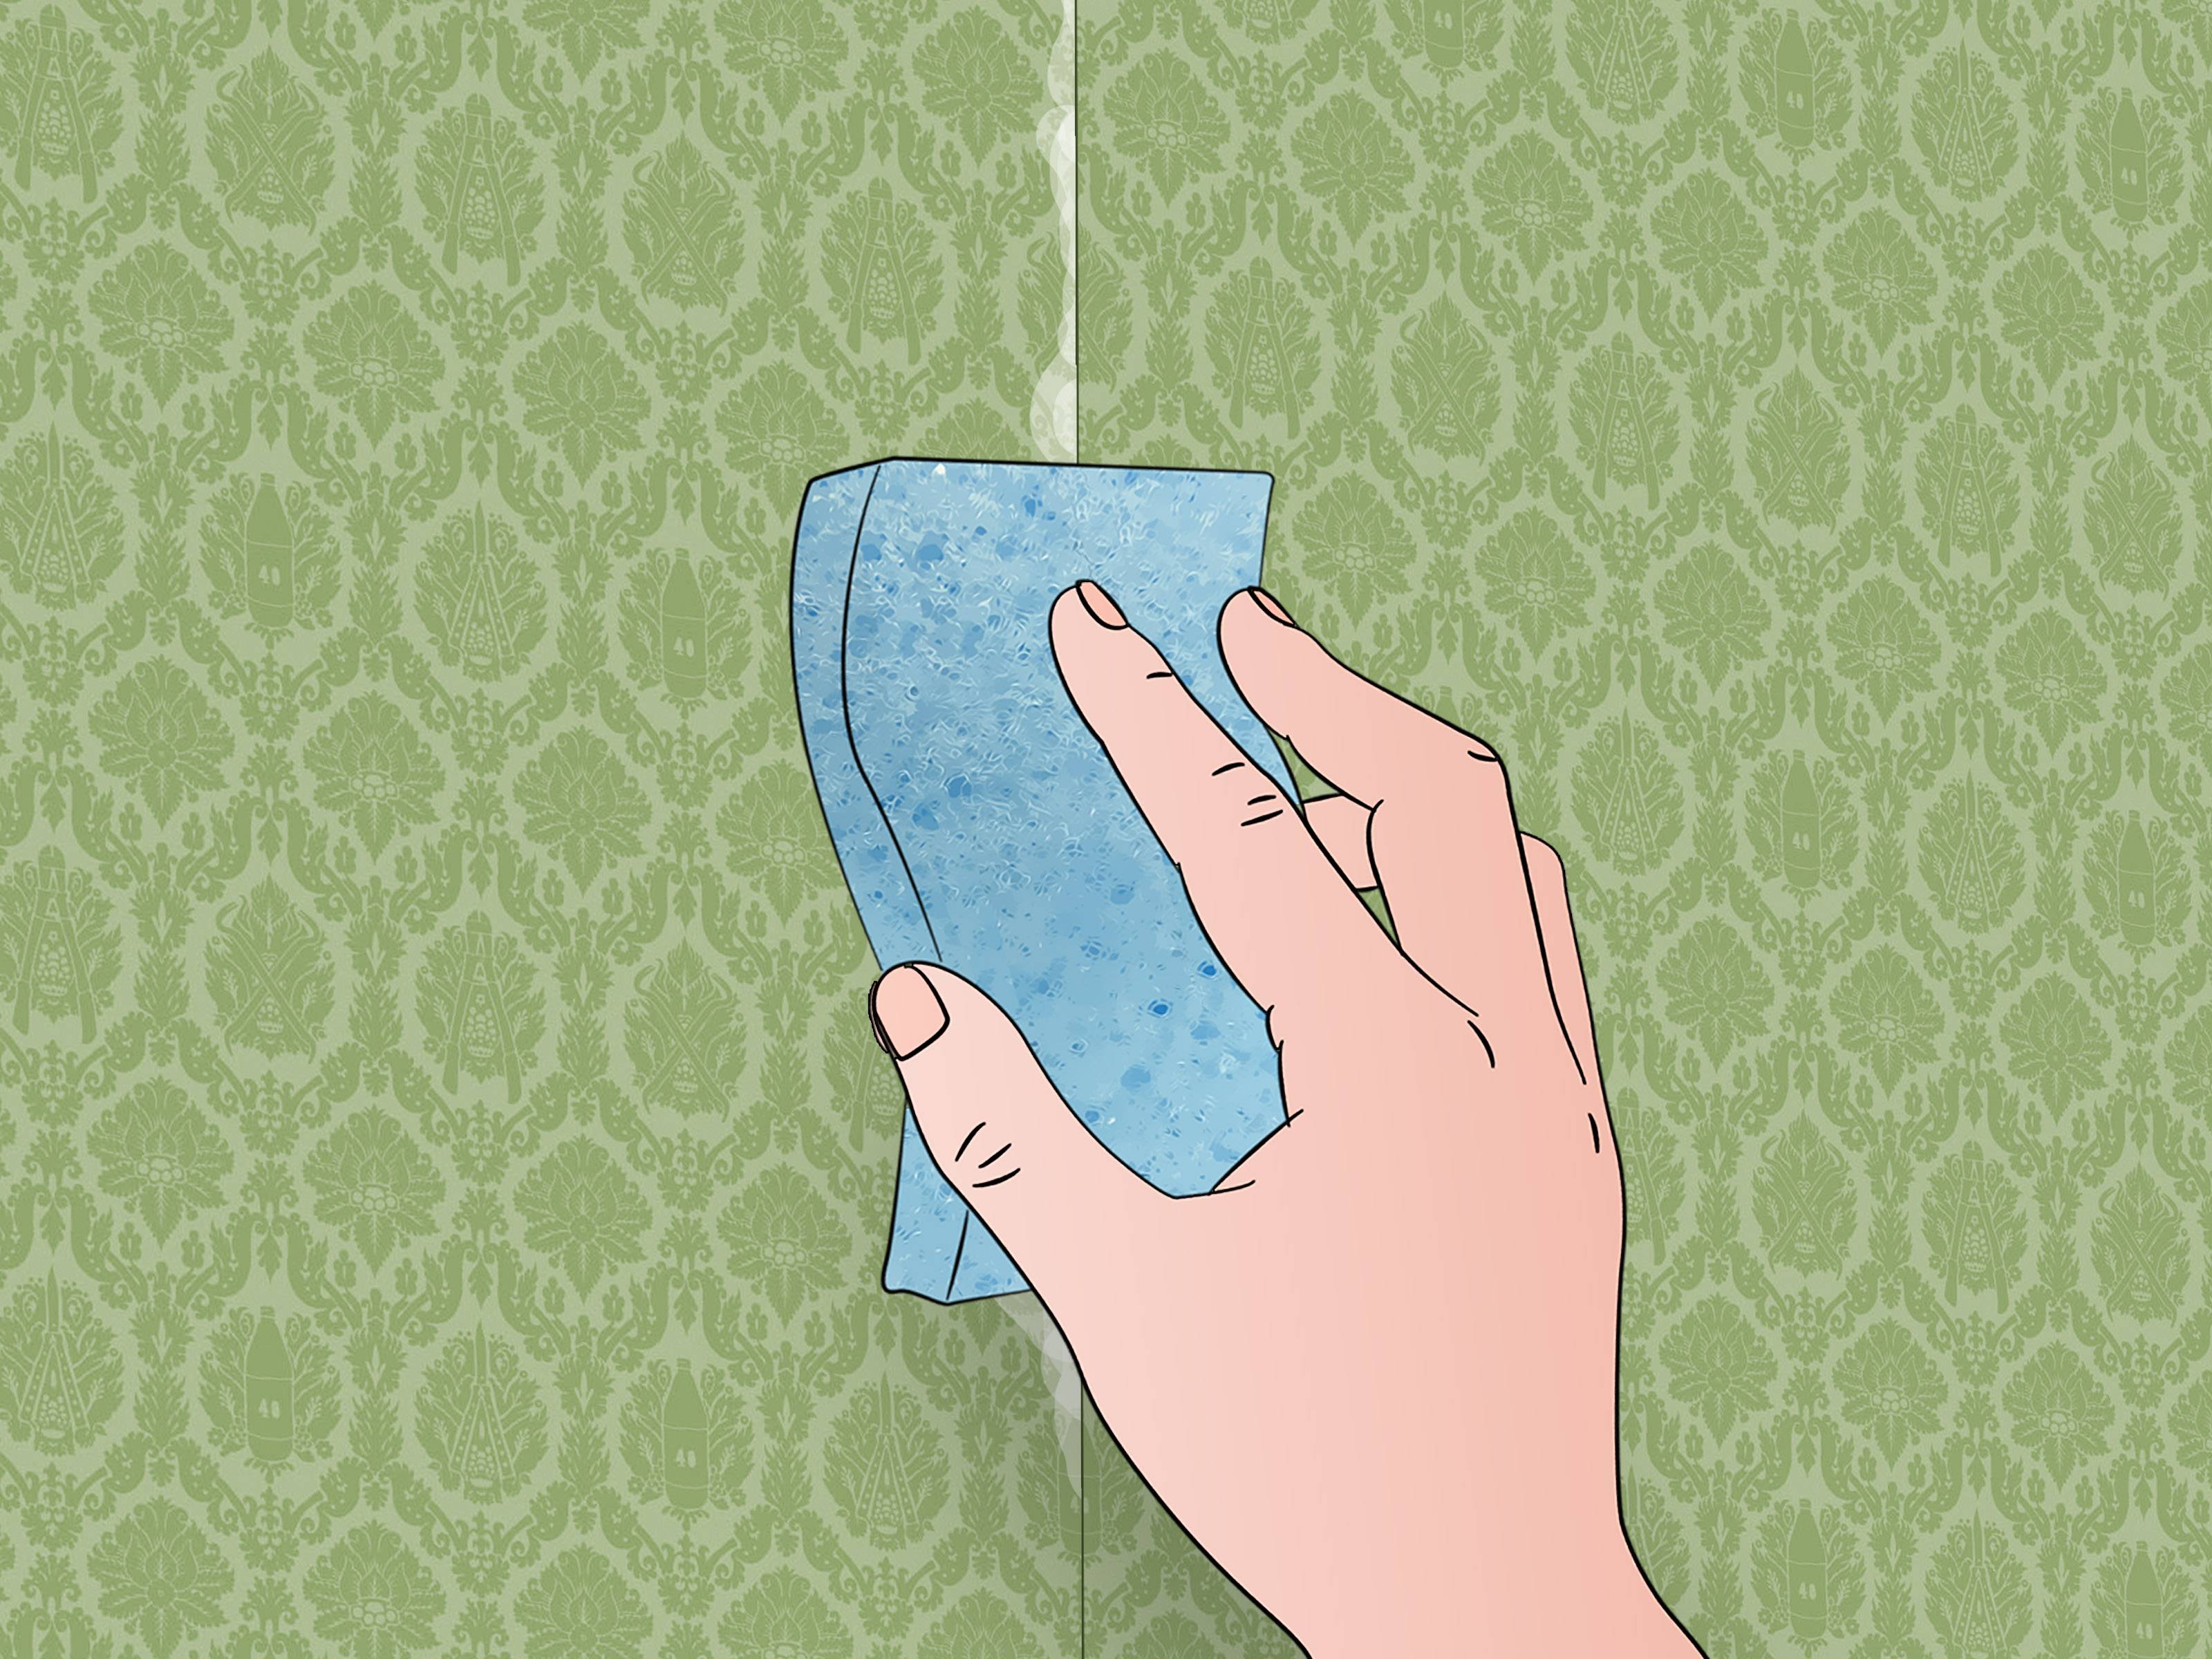 Как убрать пузыри на обоях после высыхания?